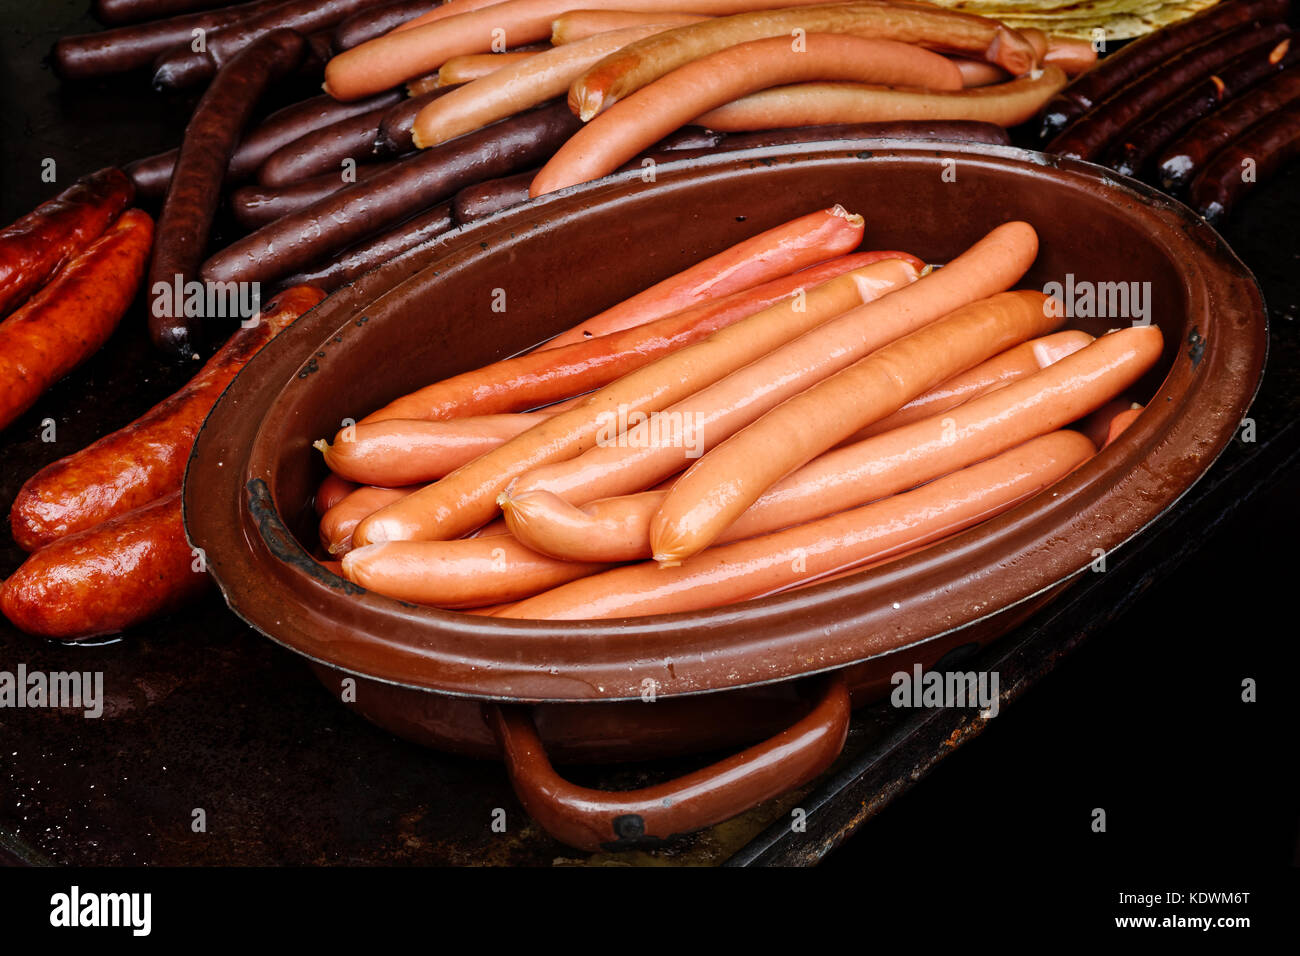 Gekochte Wiener Würstchen in Metall Topf Neben gegrillten Würstchen auf  Gusseisen Bratpfanne Stockfotografie - Alamy